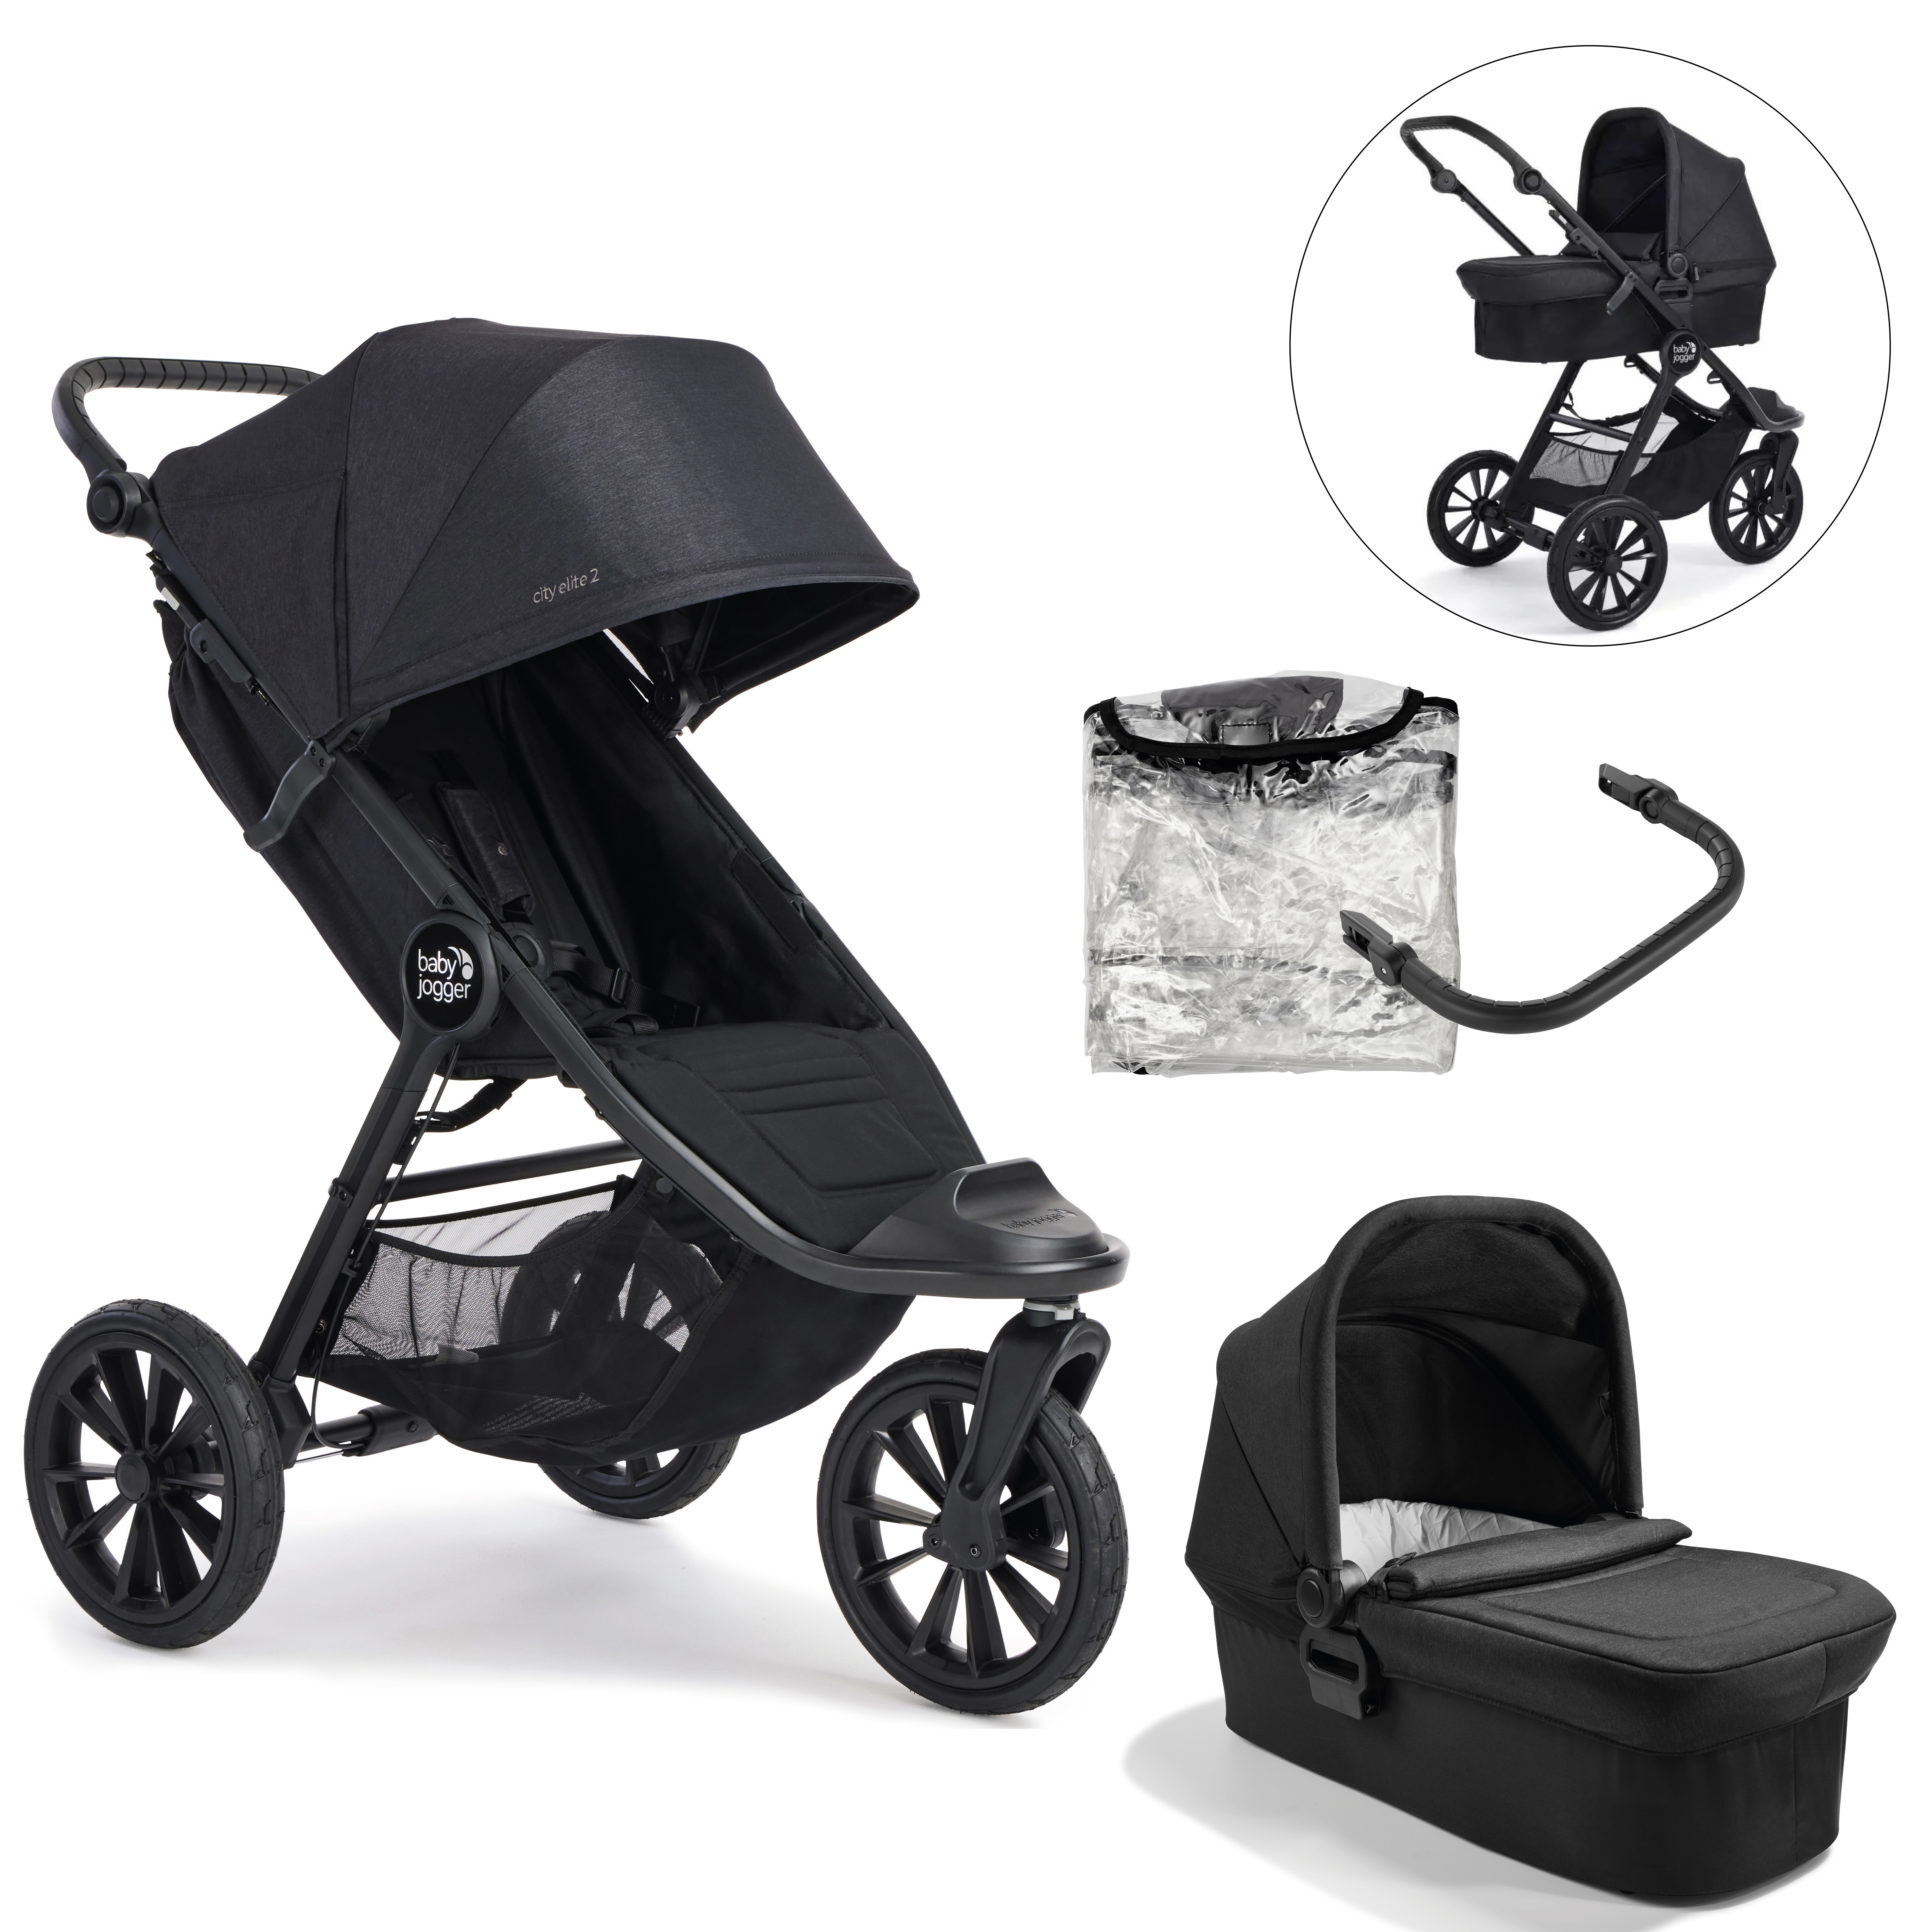 baby jogger City Elite 2 Opulent barnvagn Black inklusive liggdel, säkerhetsbåge och väderskydd